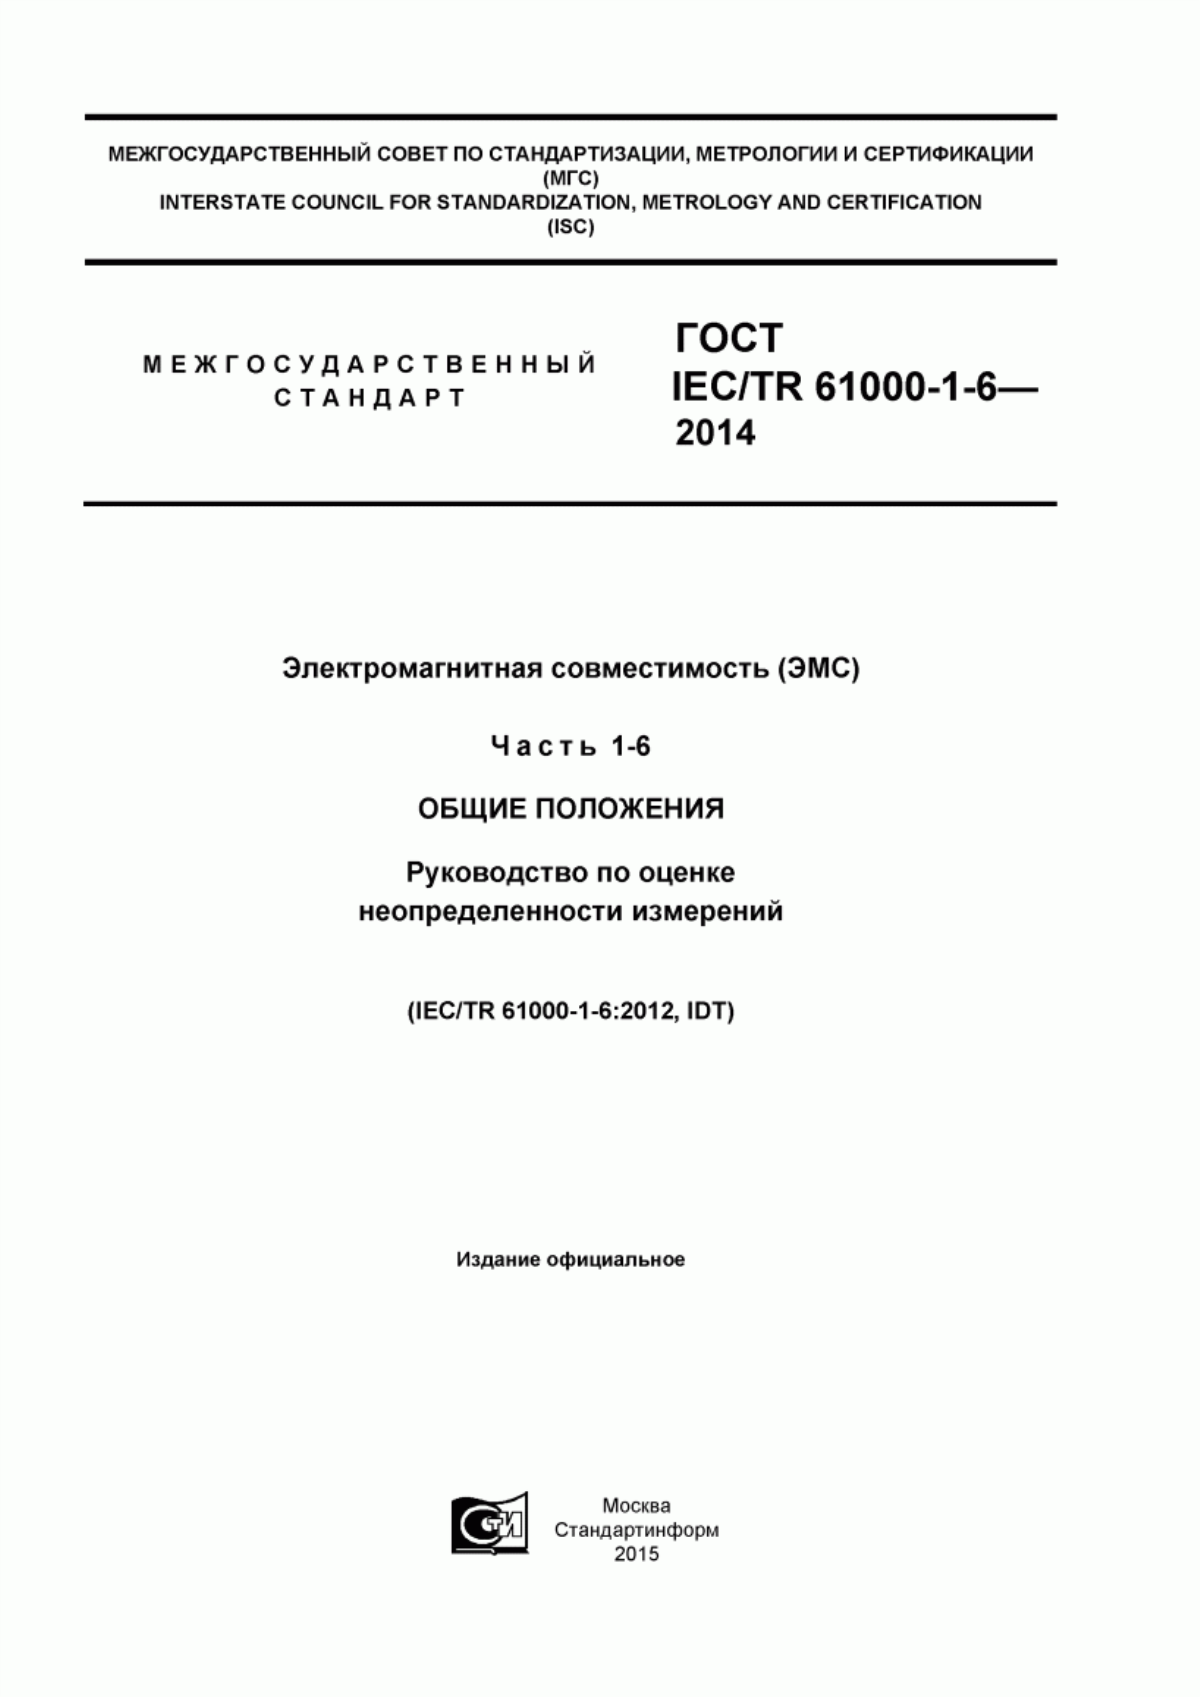 ГОСТ IEC/TR 61000-1-6-2014 Электромагнитная совместимость (ЭМС). Часть 1-6. Общие положения. Руководство по оценке неопределенности измерений